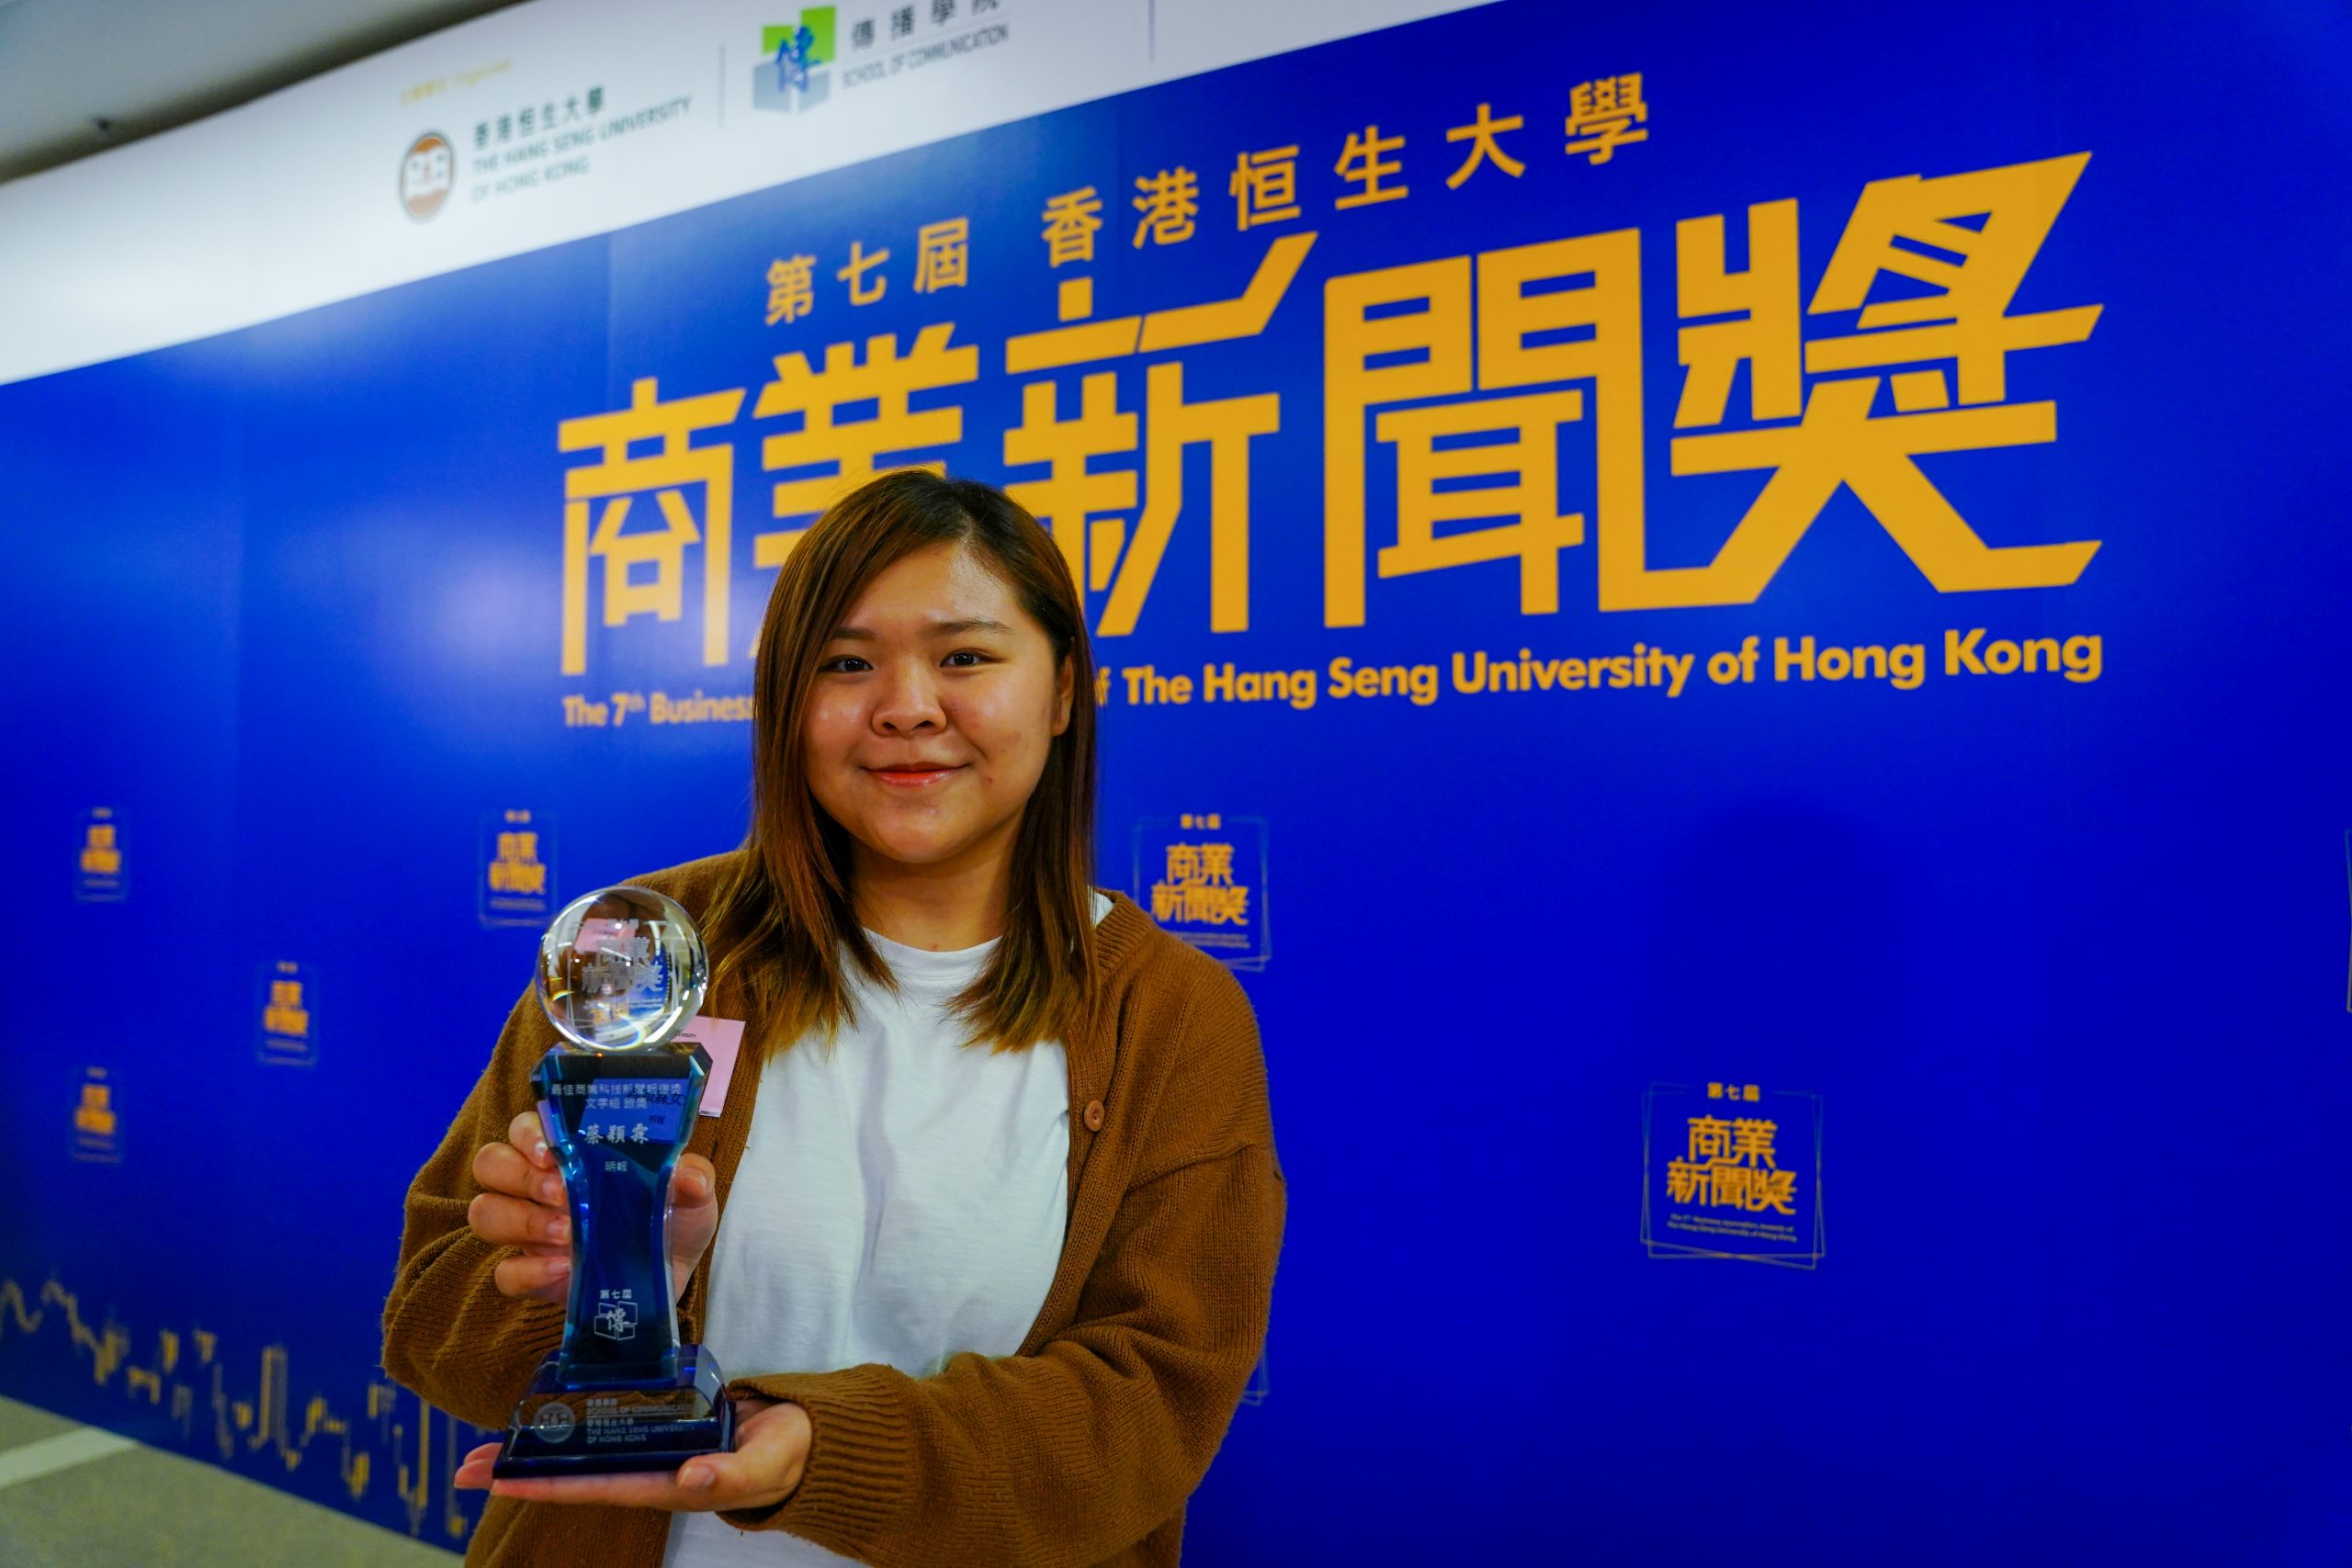 THE 7TH BUSINESS JOURNALISM AWARDS OF THE HANG SENG UNIVERSITY OF HONG KONG - The Hang Seng University of Hong Kong 3